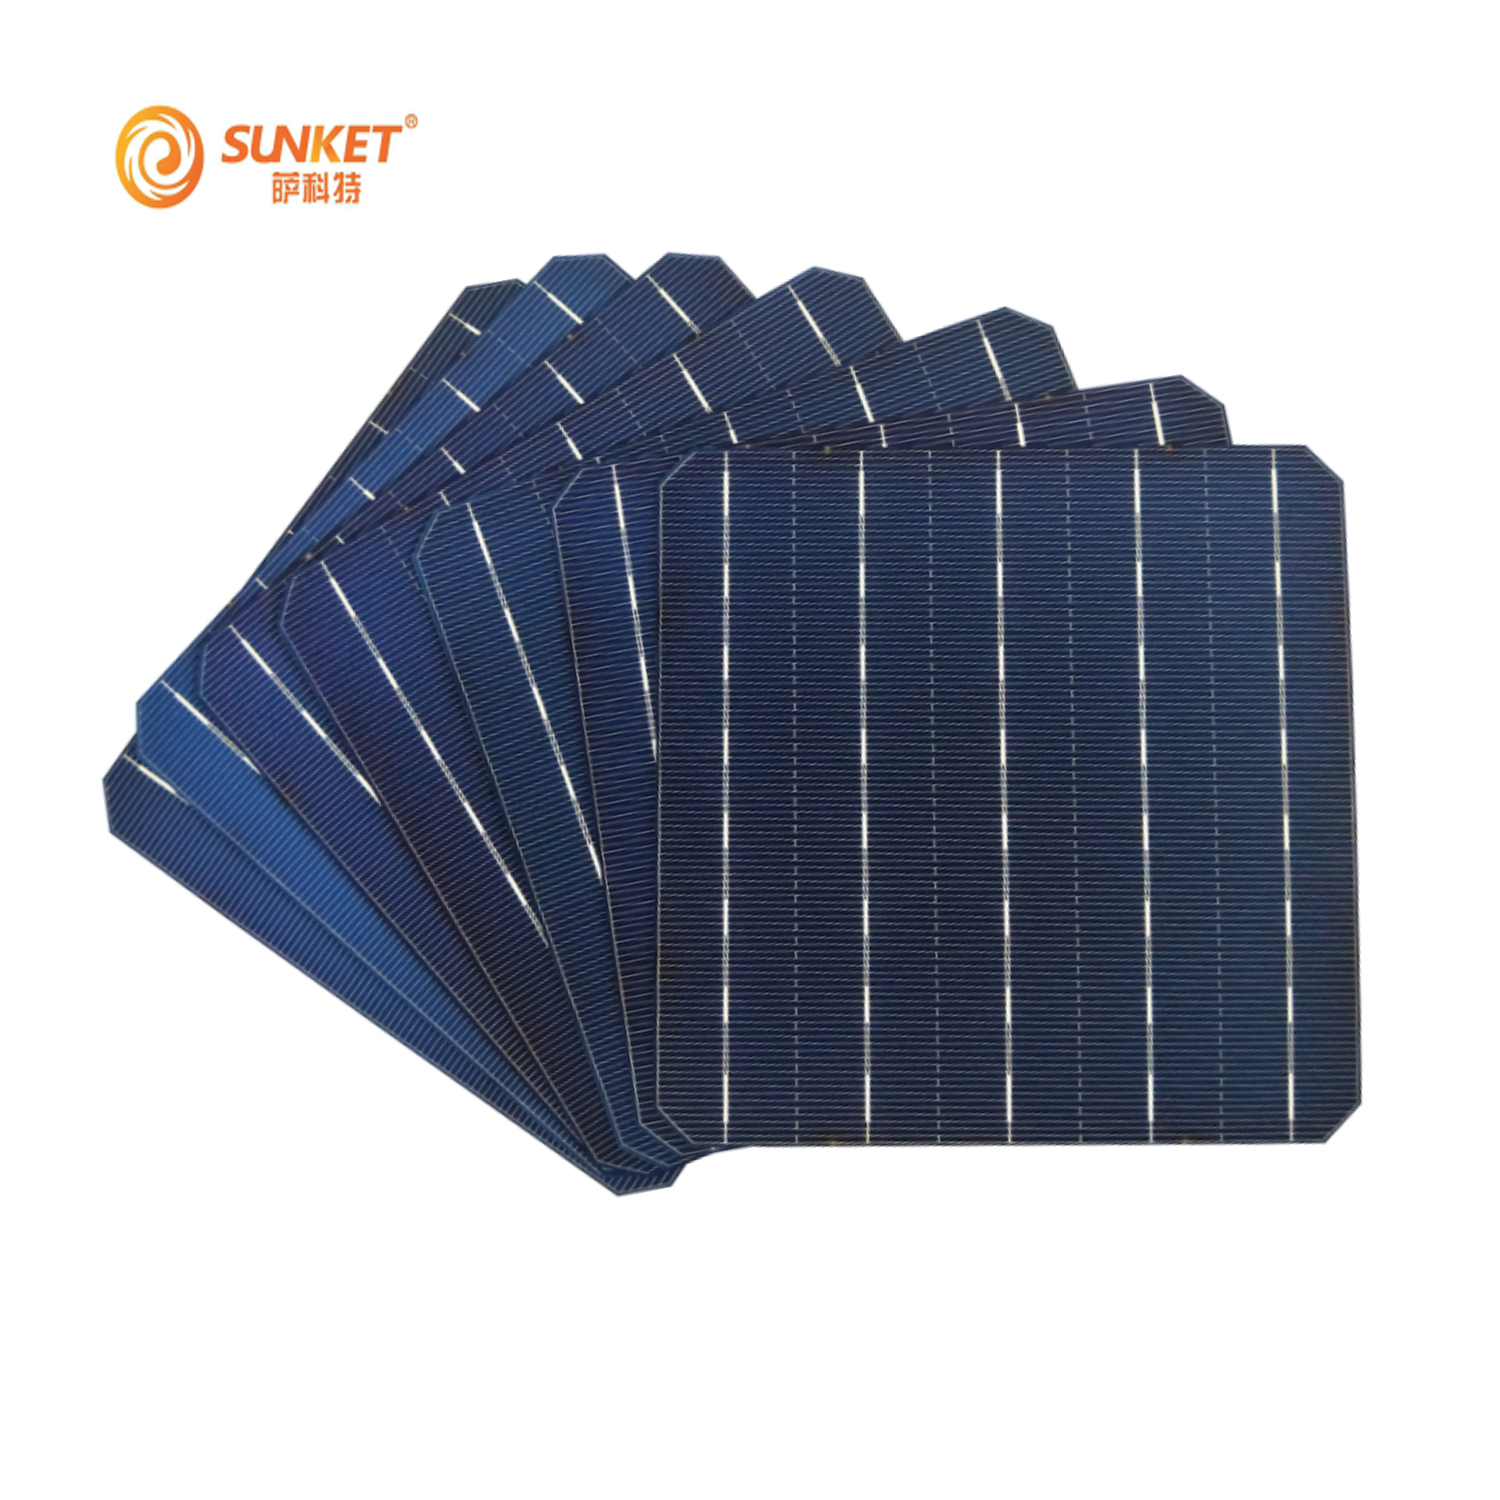 Celda de panel solar barata de 6 pulgadas y 156,75 mm